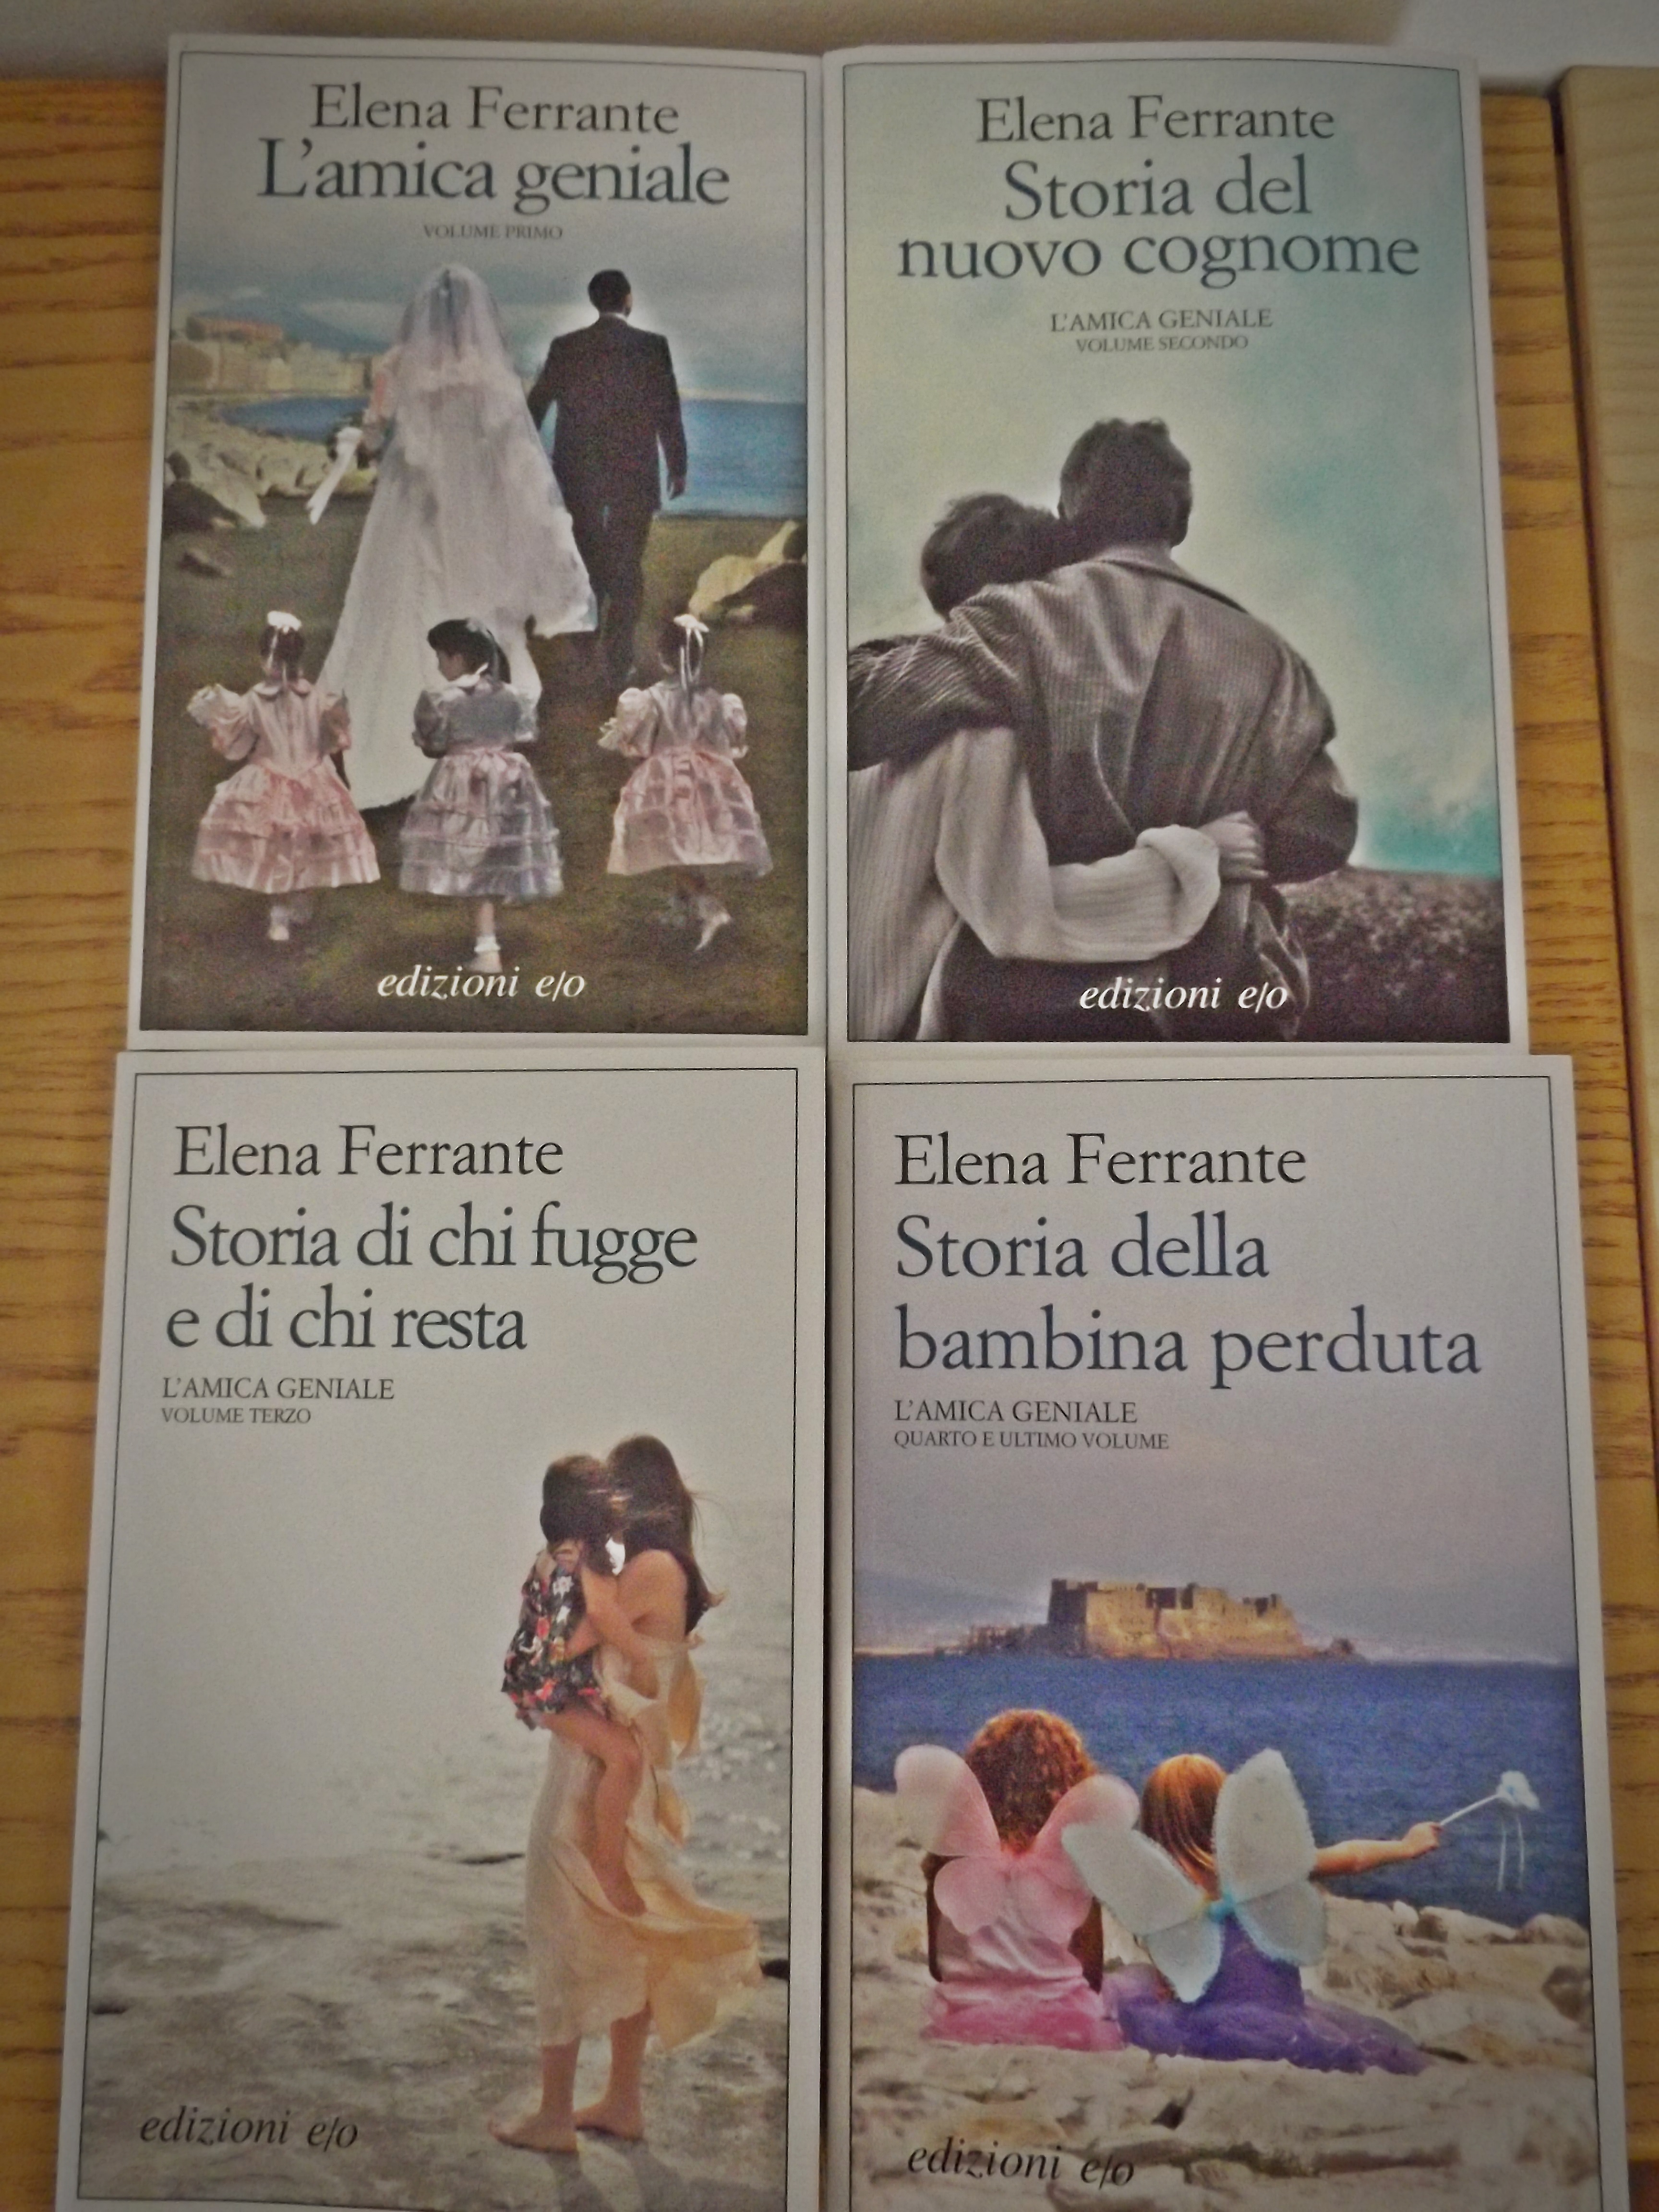 L'amica geniale di Elena Ferrante – il libro geniale